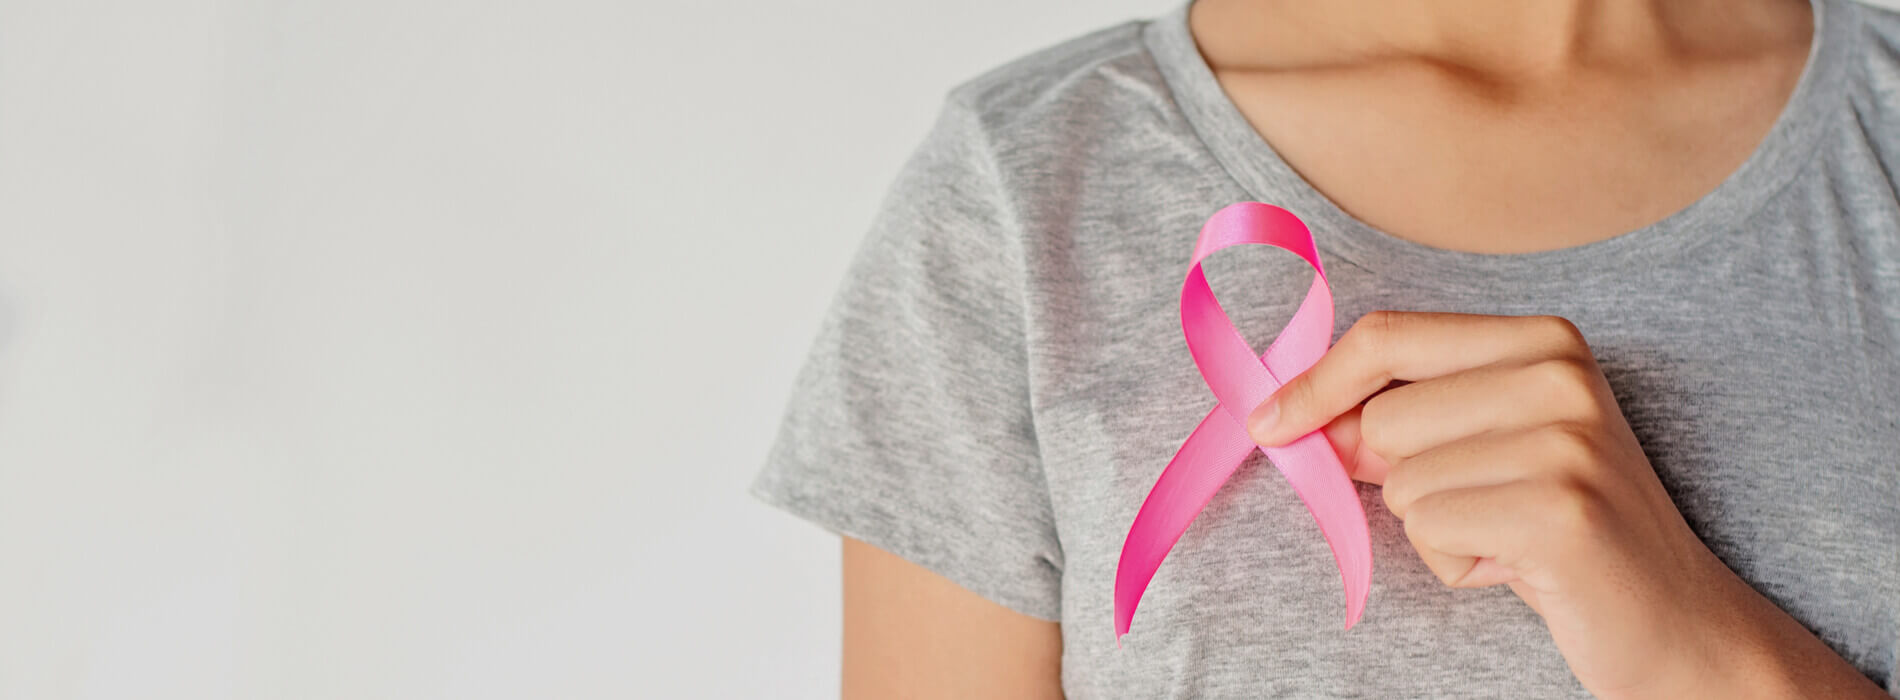 Rak piersi - objawy, podłoże genetyczne, profilaktyka